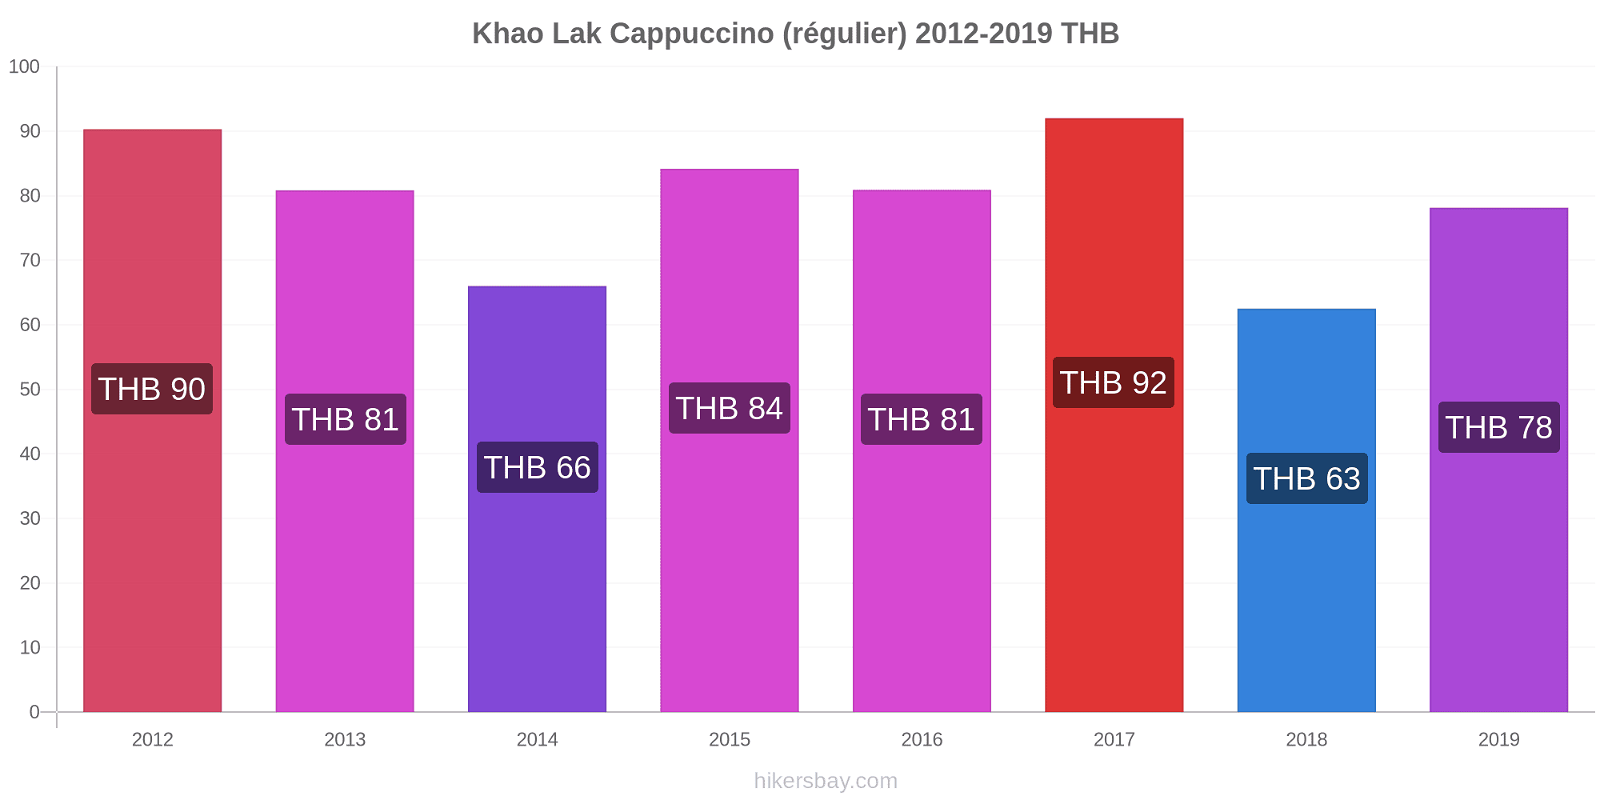 Khao Lak changements de prix Cappuccino (régulier) hikersbay.com